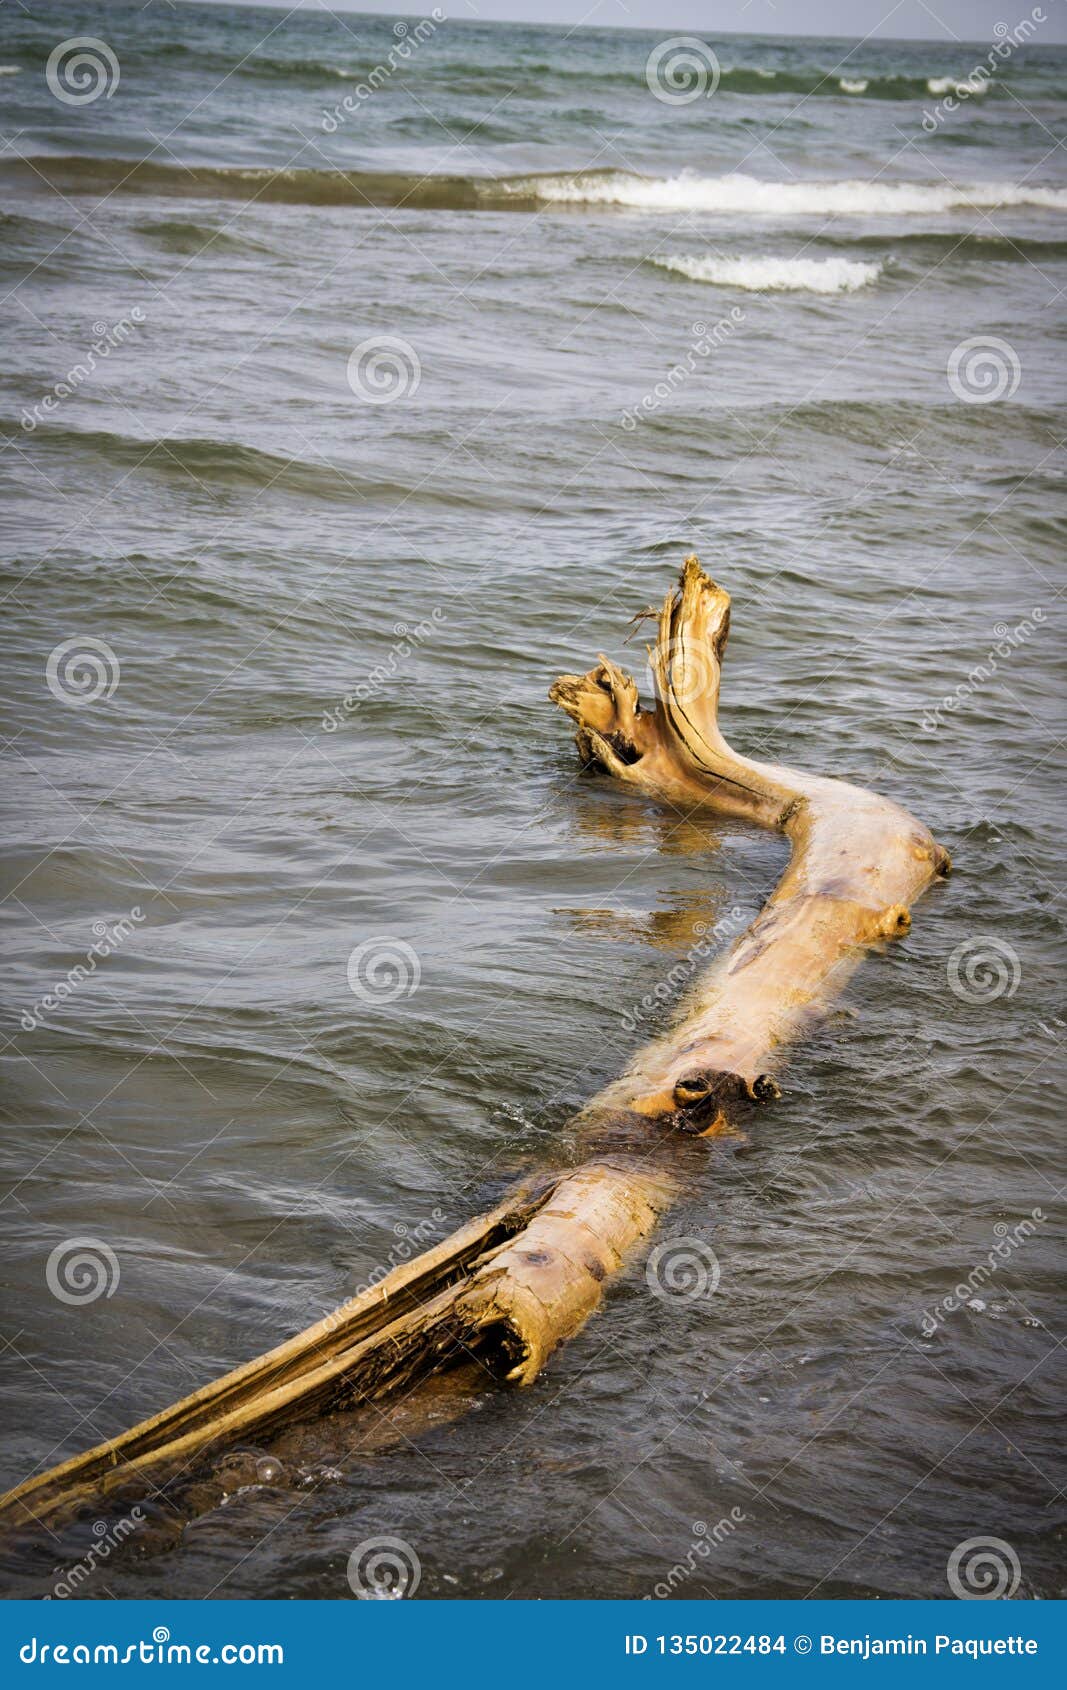 Antriebholz wusch sich oben auf dem Ufer vom Ontariosee. Ein Bild des Antriebholzes gewaschen oben auf dem Ufer vom Ontariosee